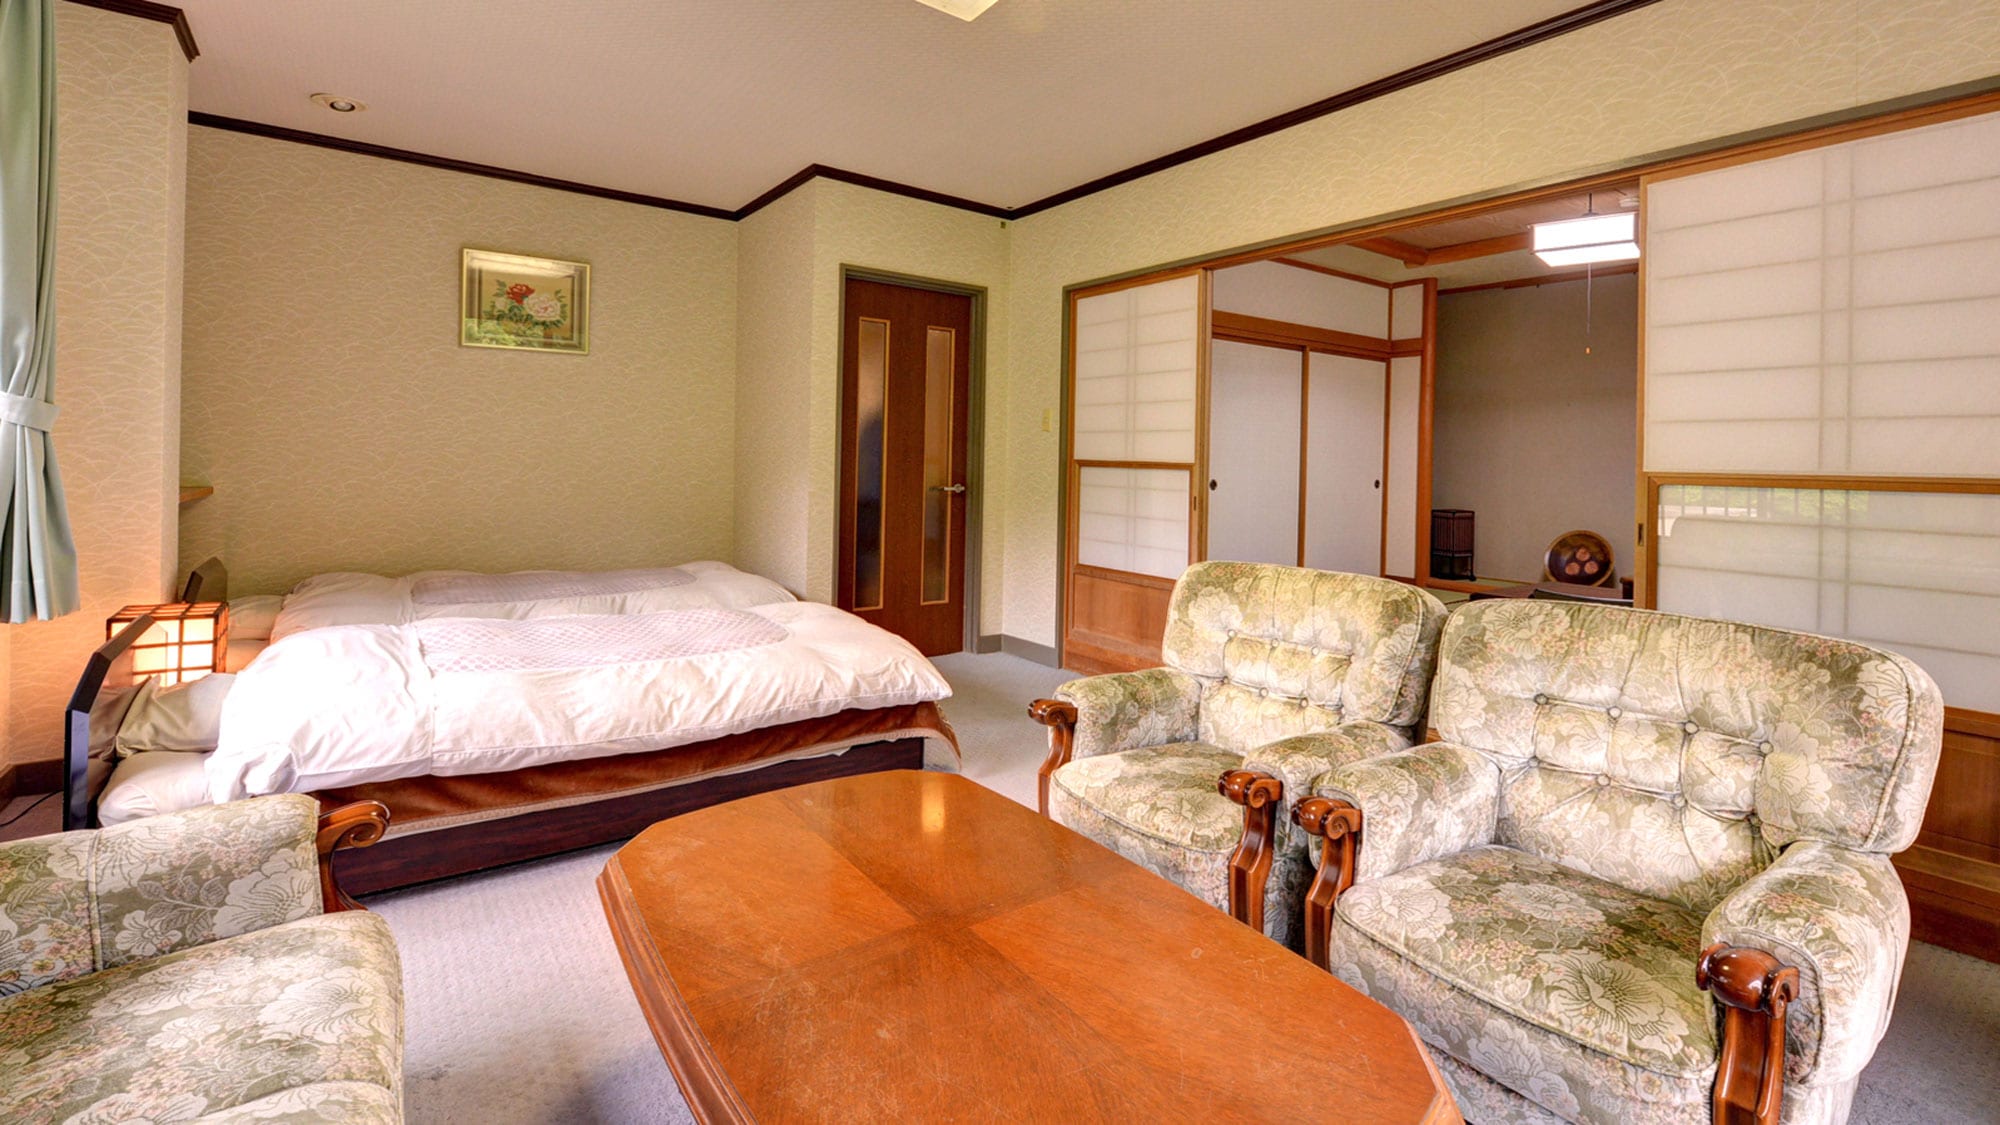 * [客房示例] 日式和西式房间。可以同时享受日式和西式优点的房间。请在榻榻米房间度过愉快的时光。